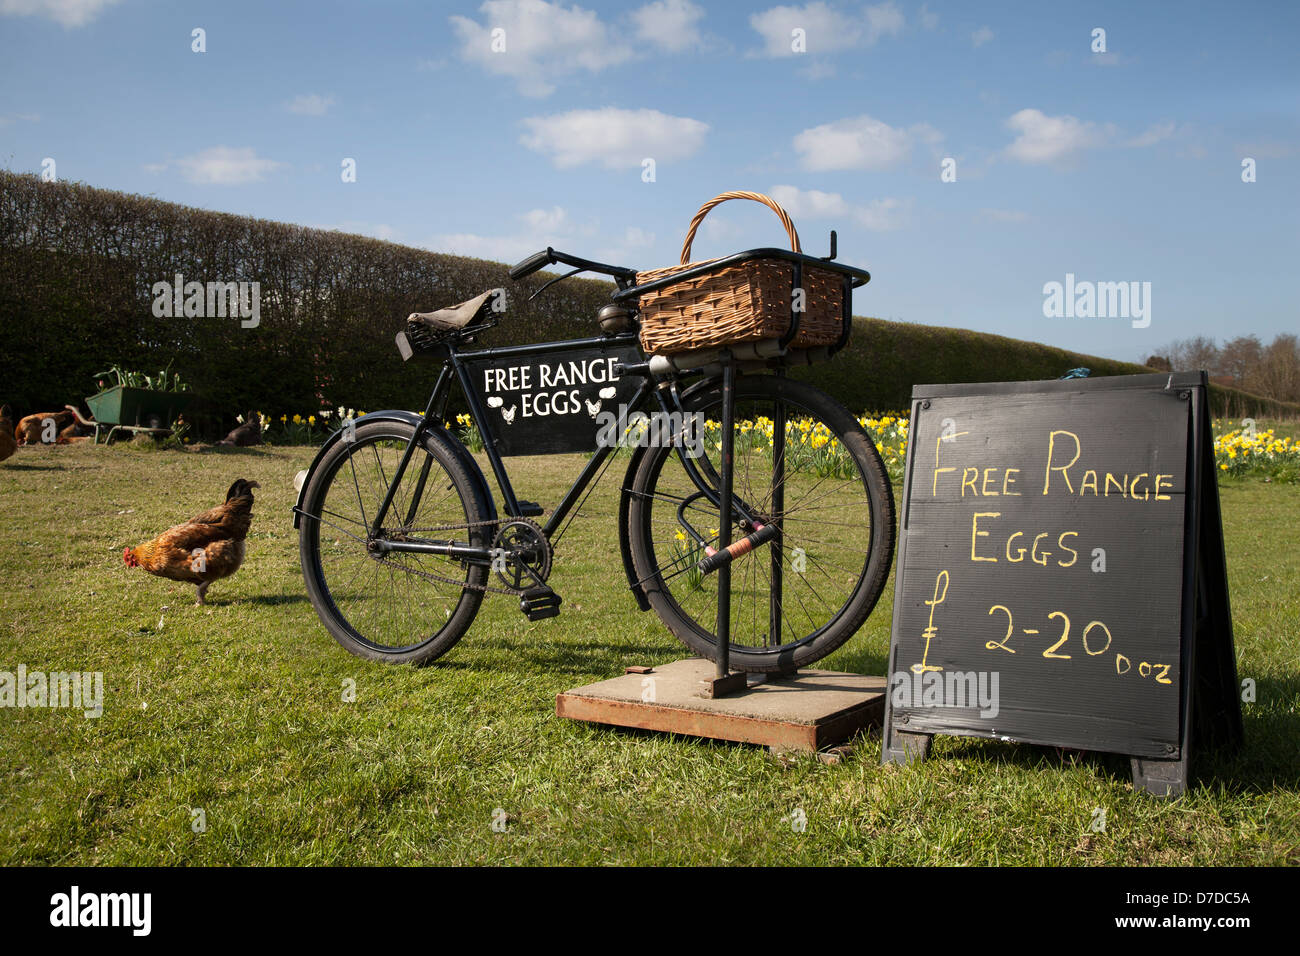 Lebende Hühner, Hühner und Freilandeier zum Verkauf Sign on Old Bicycle Sale Trailer  Roadside in Pickering, North Yorkshire, Großbritannien Stockfoto